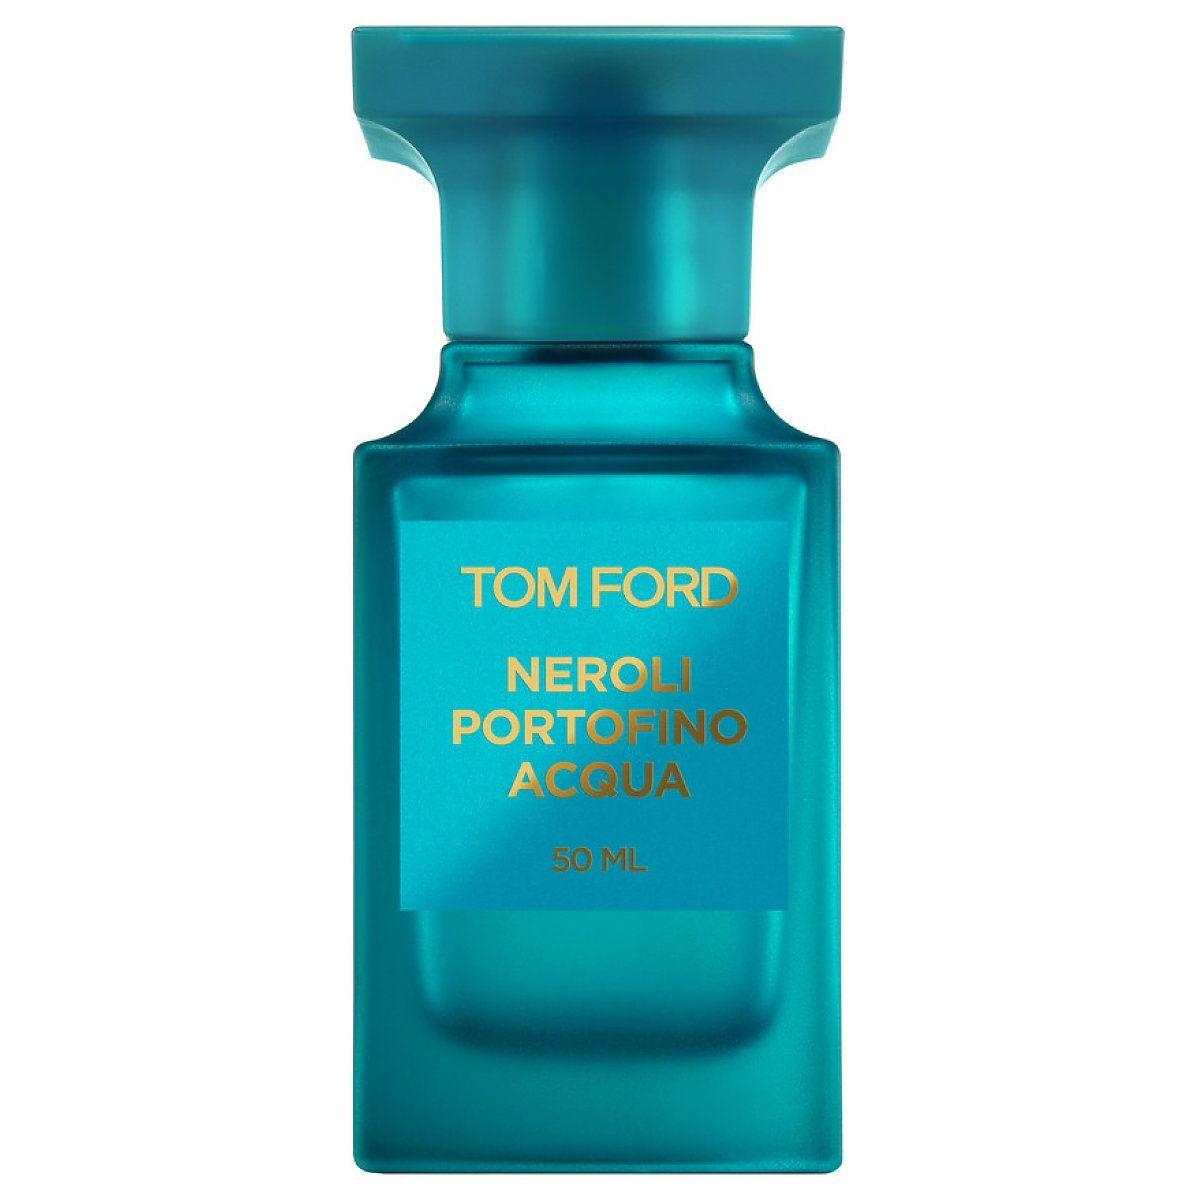 Tom Ford Neroli Portofino Acqua Woda toaletowa spray 50ml